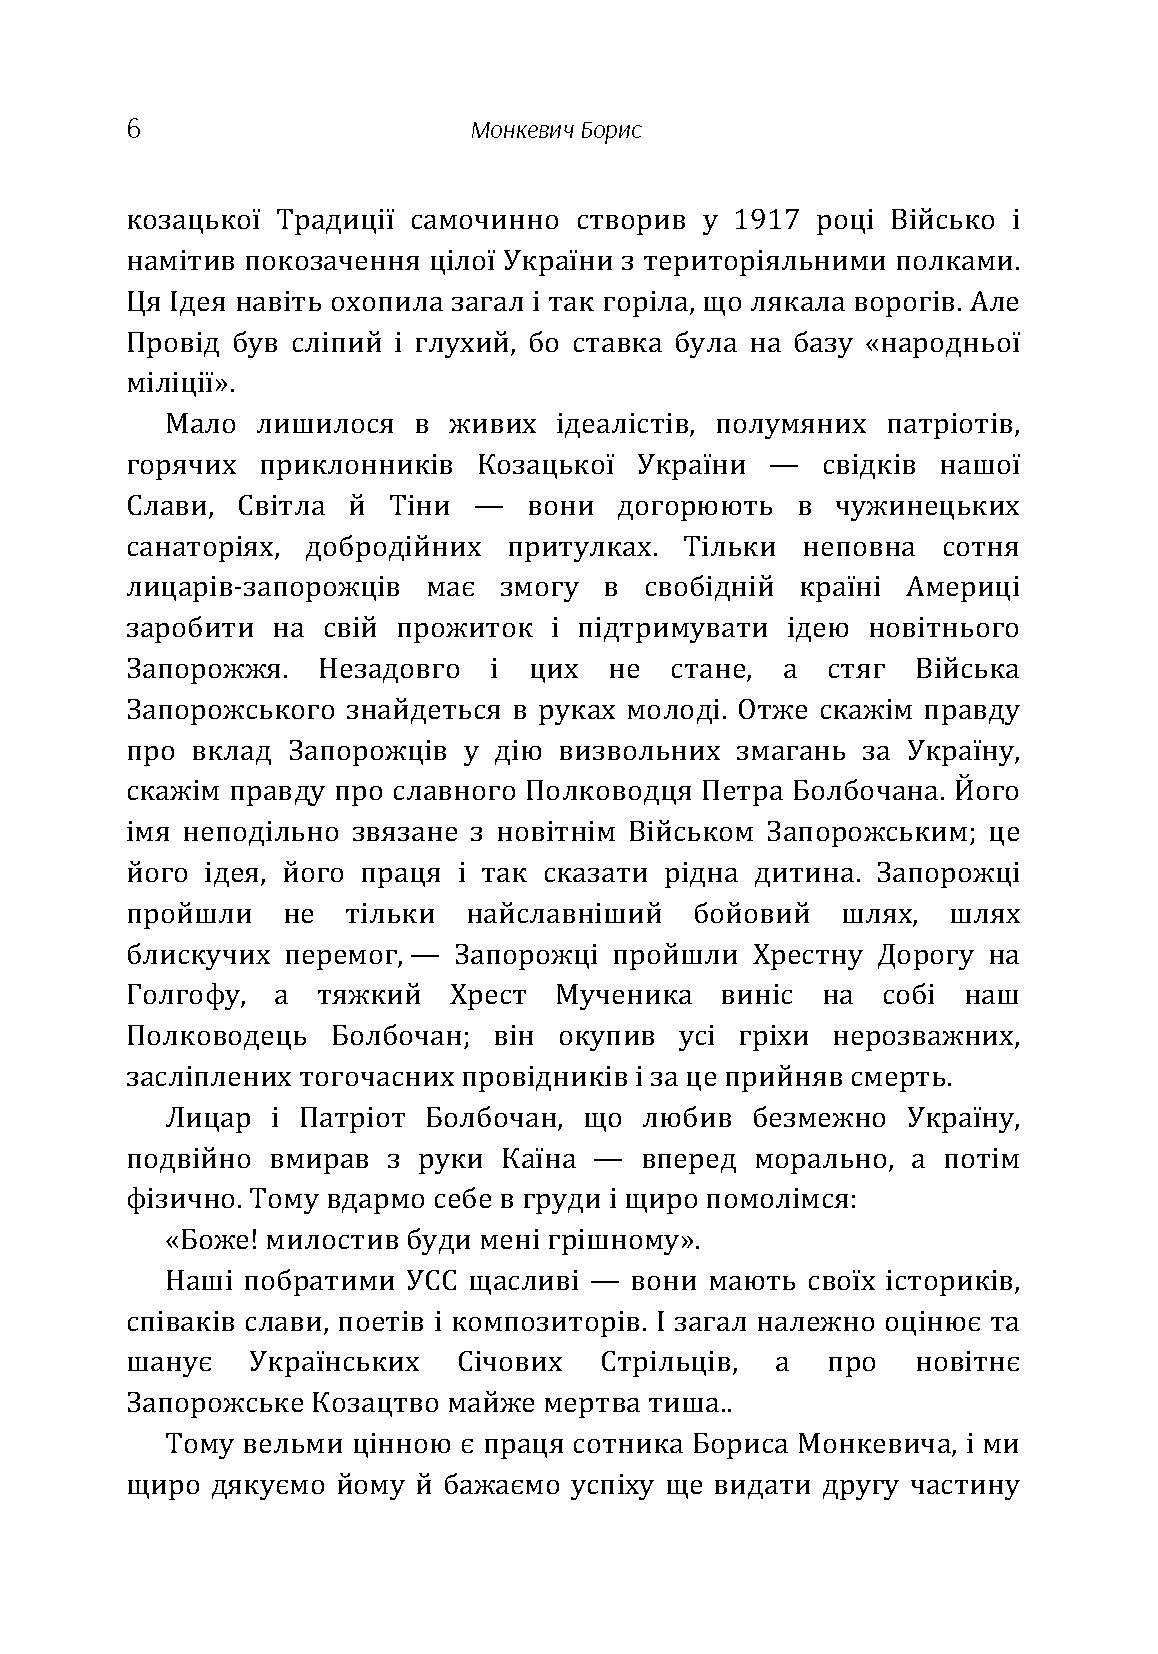 Похід Болбочана на Крим. Автор — Монкевич Борис. 